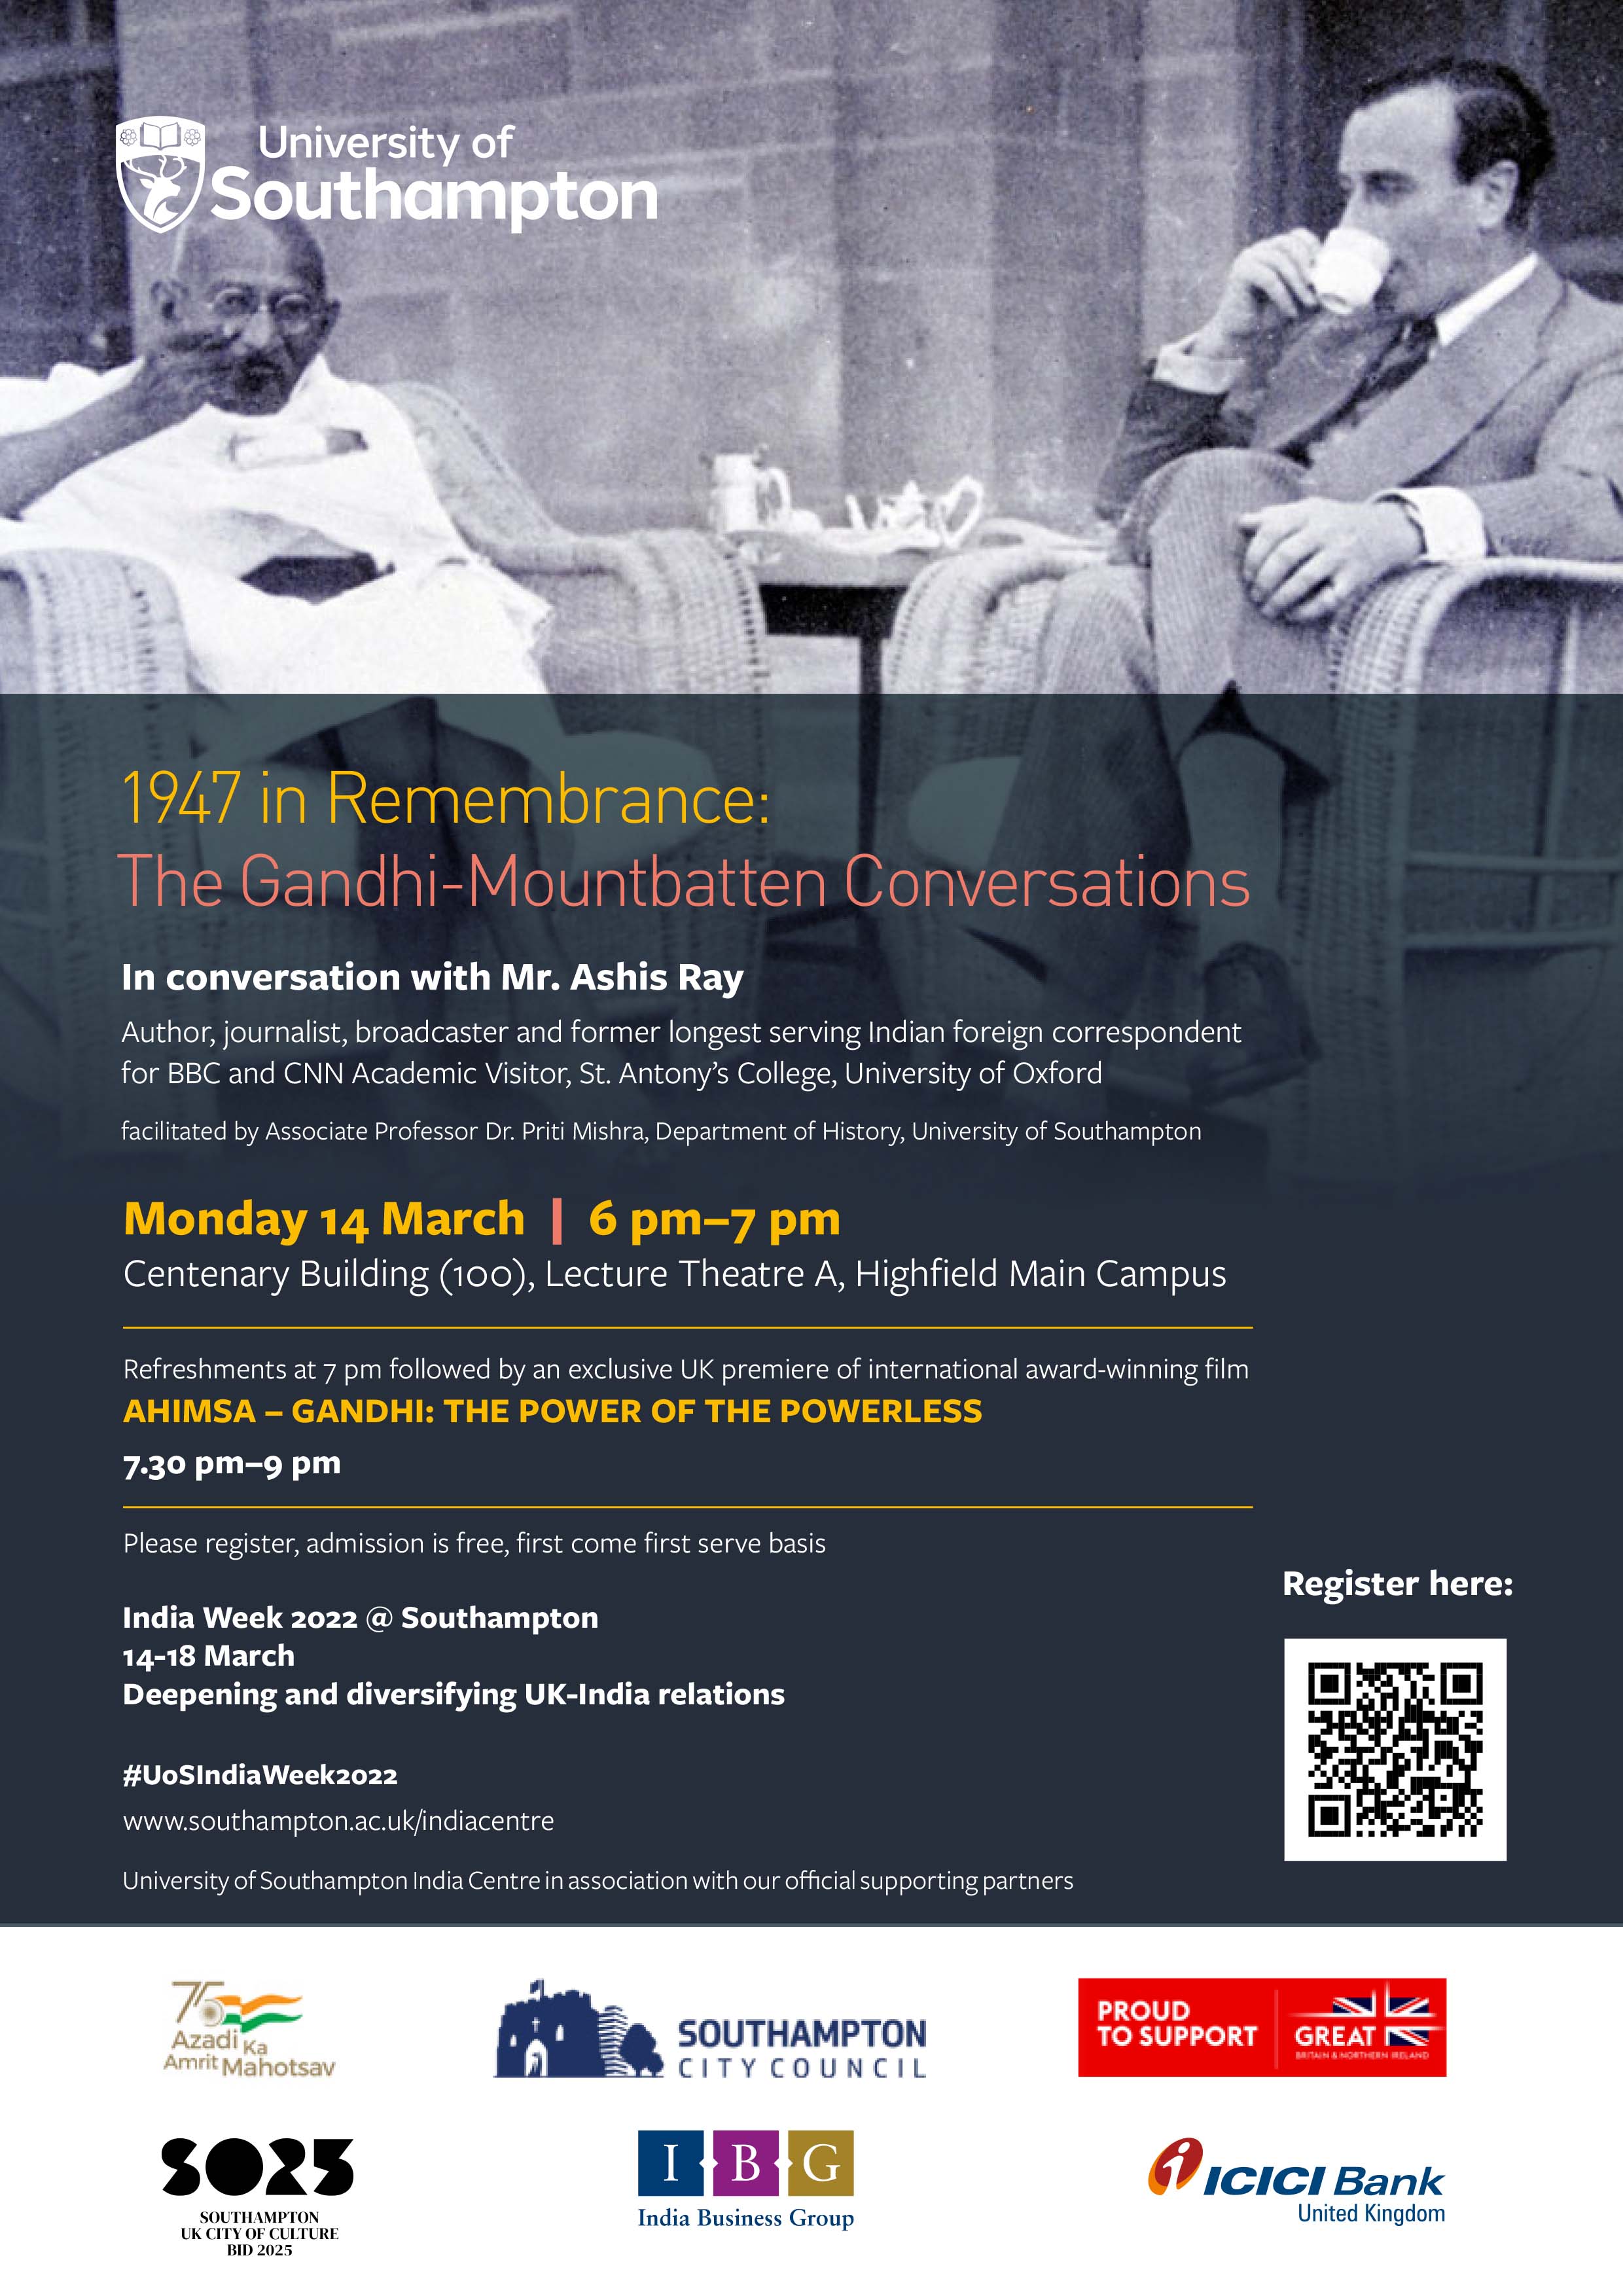 The Gandhi-Mountbatten Conversations flyer